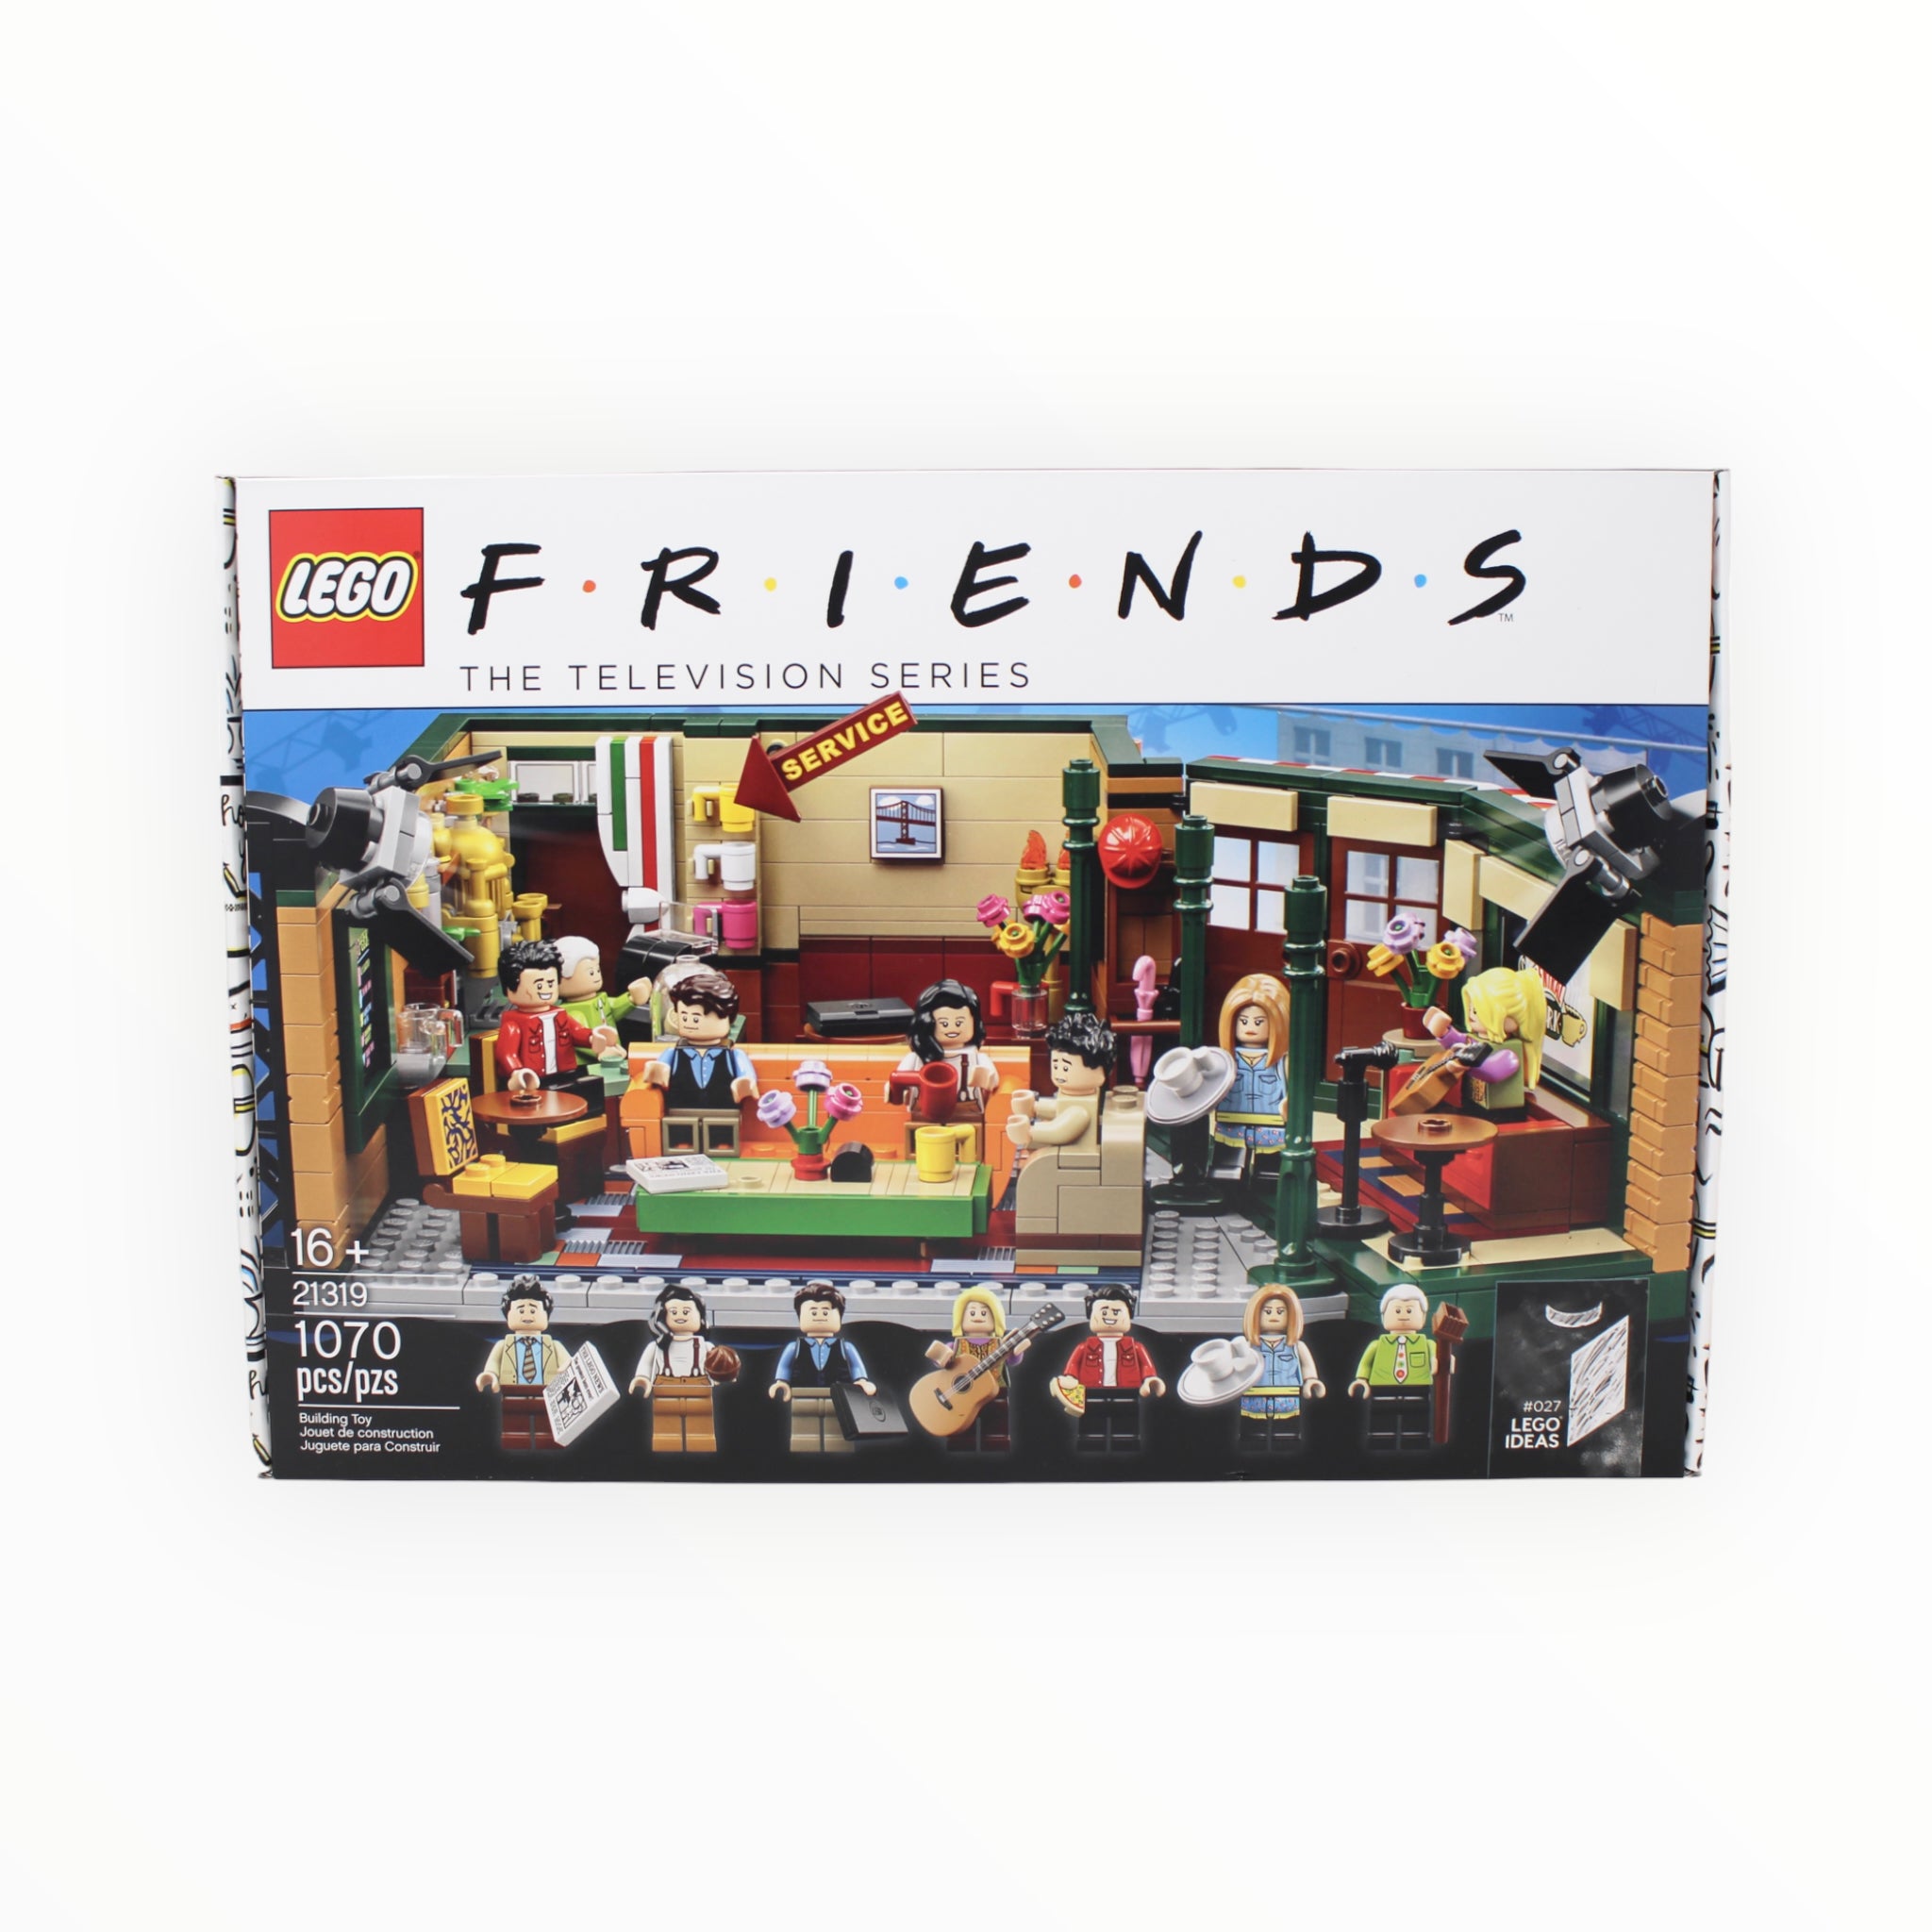 Retired Set 21319 LEGO Ideas F.R.I.E.N.D.S Central Perk